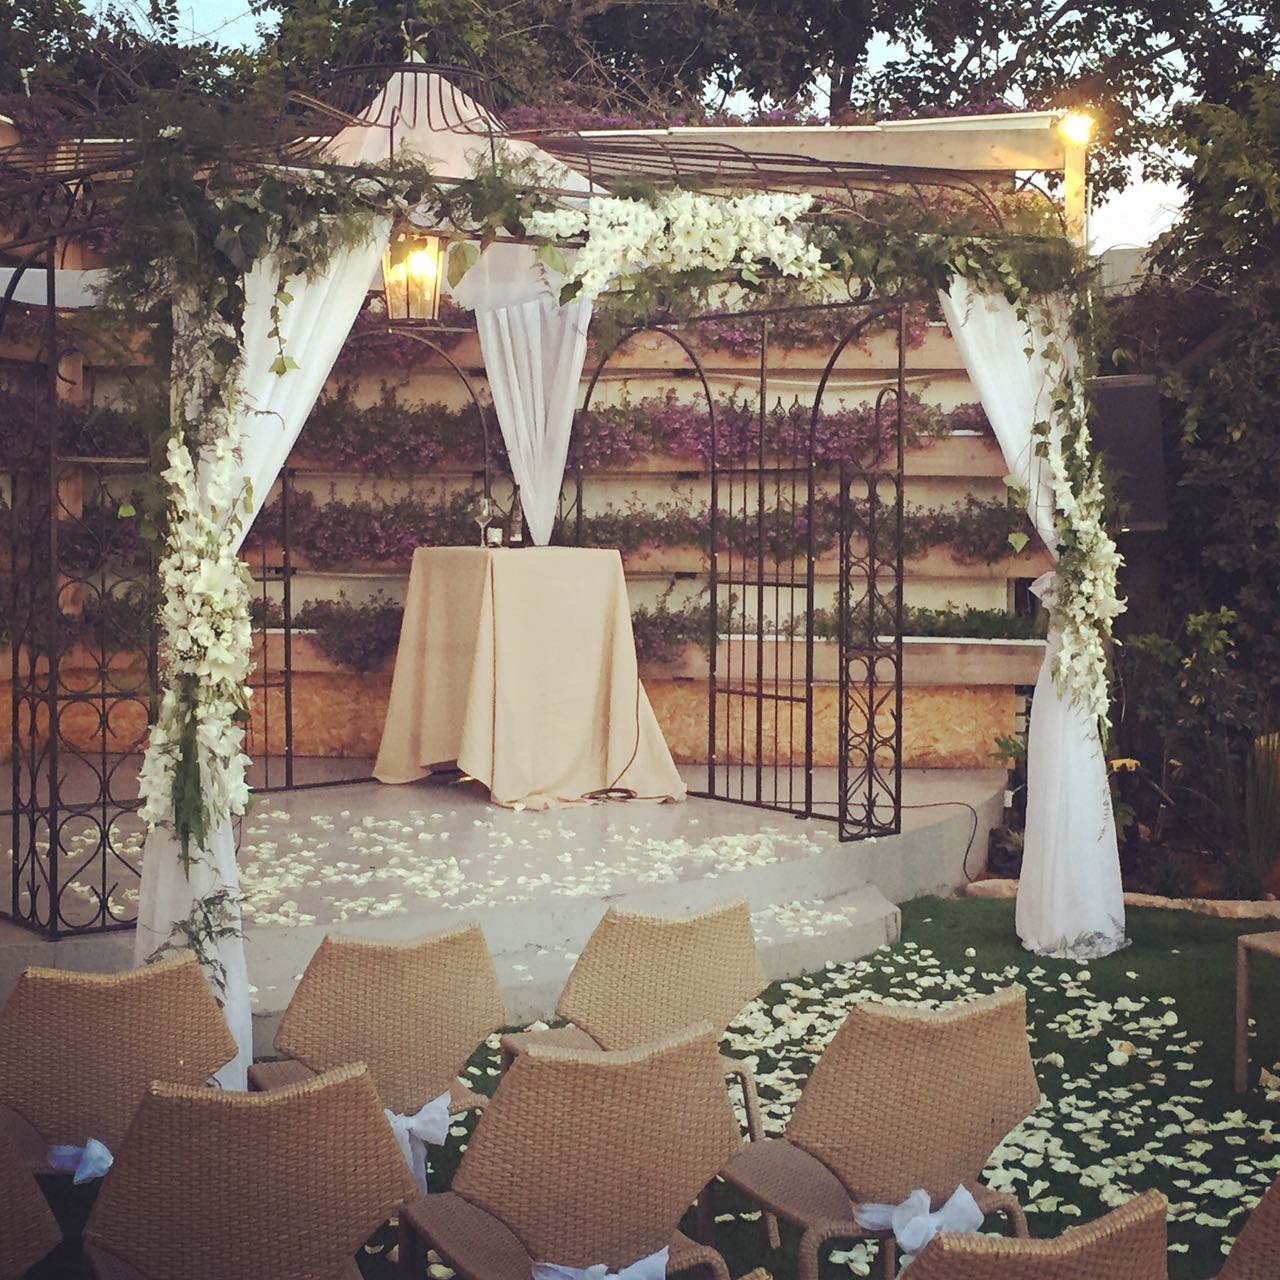 חתונה קטנה בתל אביב – כי זה המקום לערוך בו חתונה קטנה